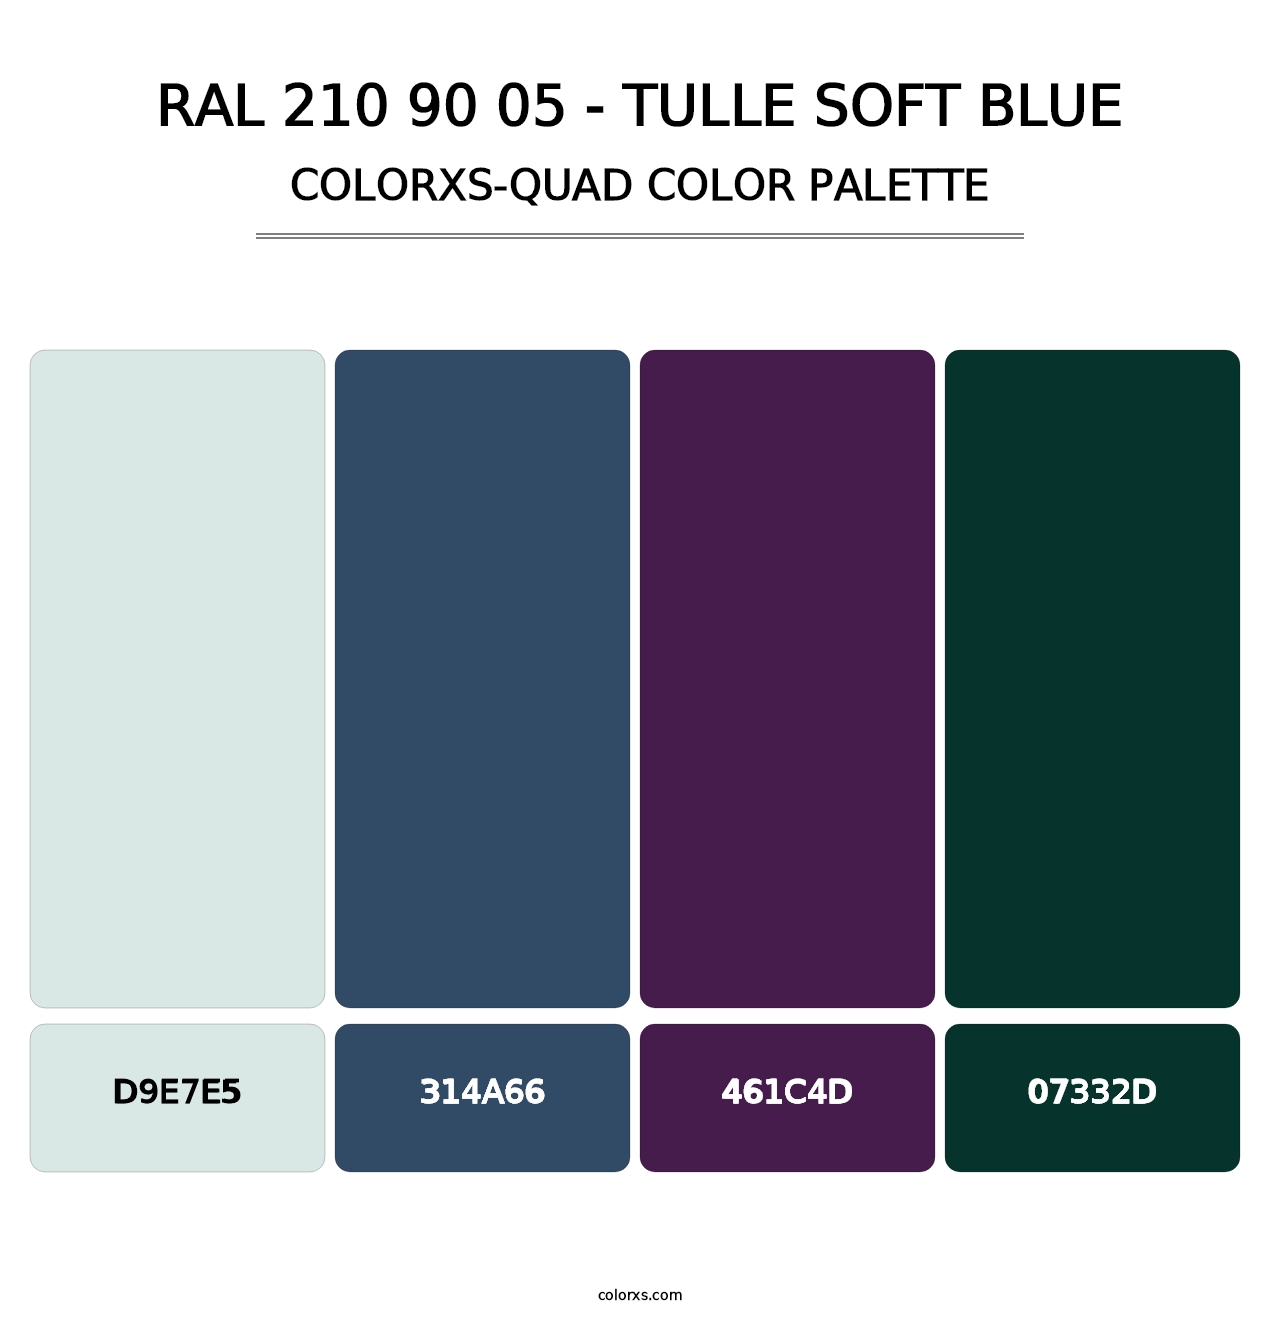 RAL 210 90 05 - Tulle Soft Blue - Colorxs Quad Palette